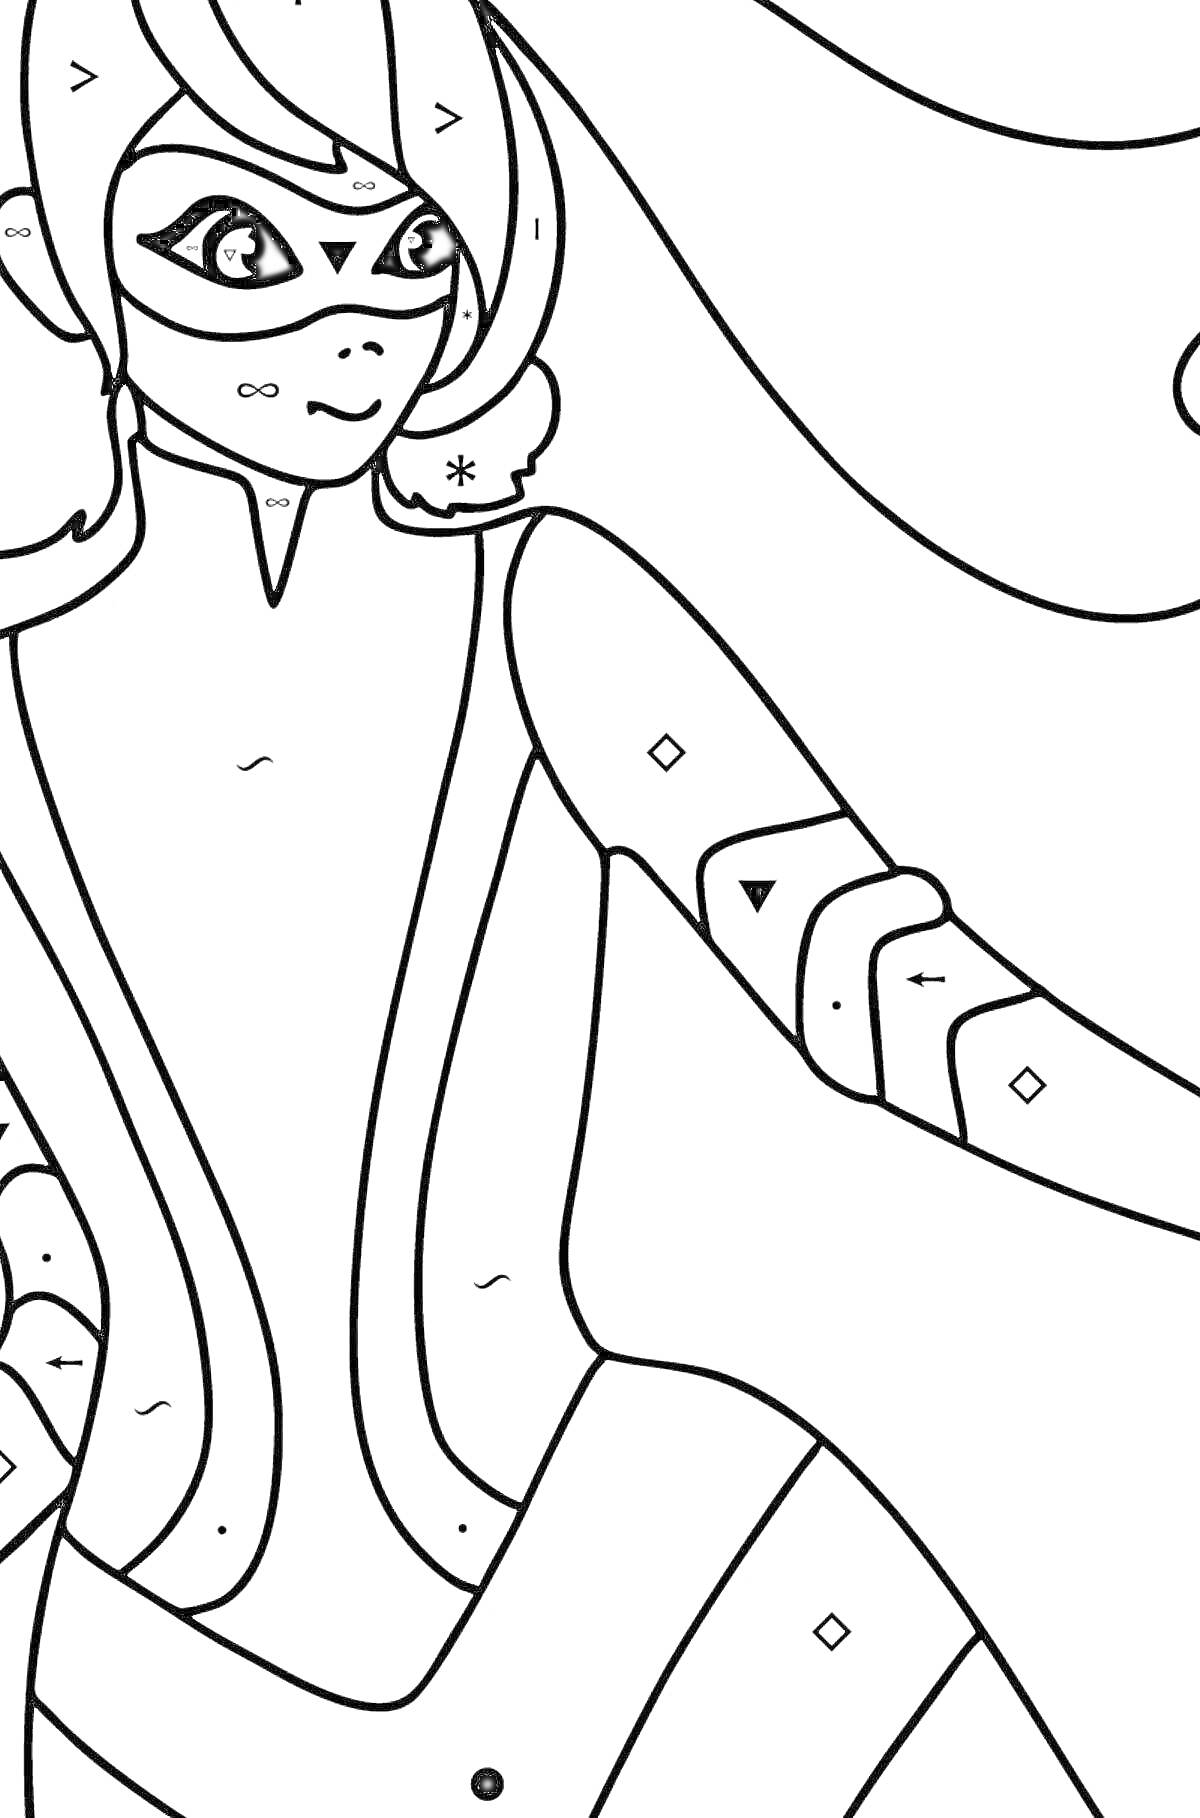 Раскраска Леди Пчела и Леди Баг с длинными волосами, маска на лице, костюм с узорами и украшениями